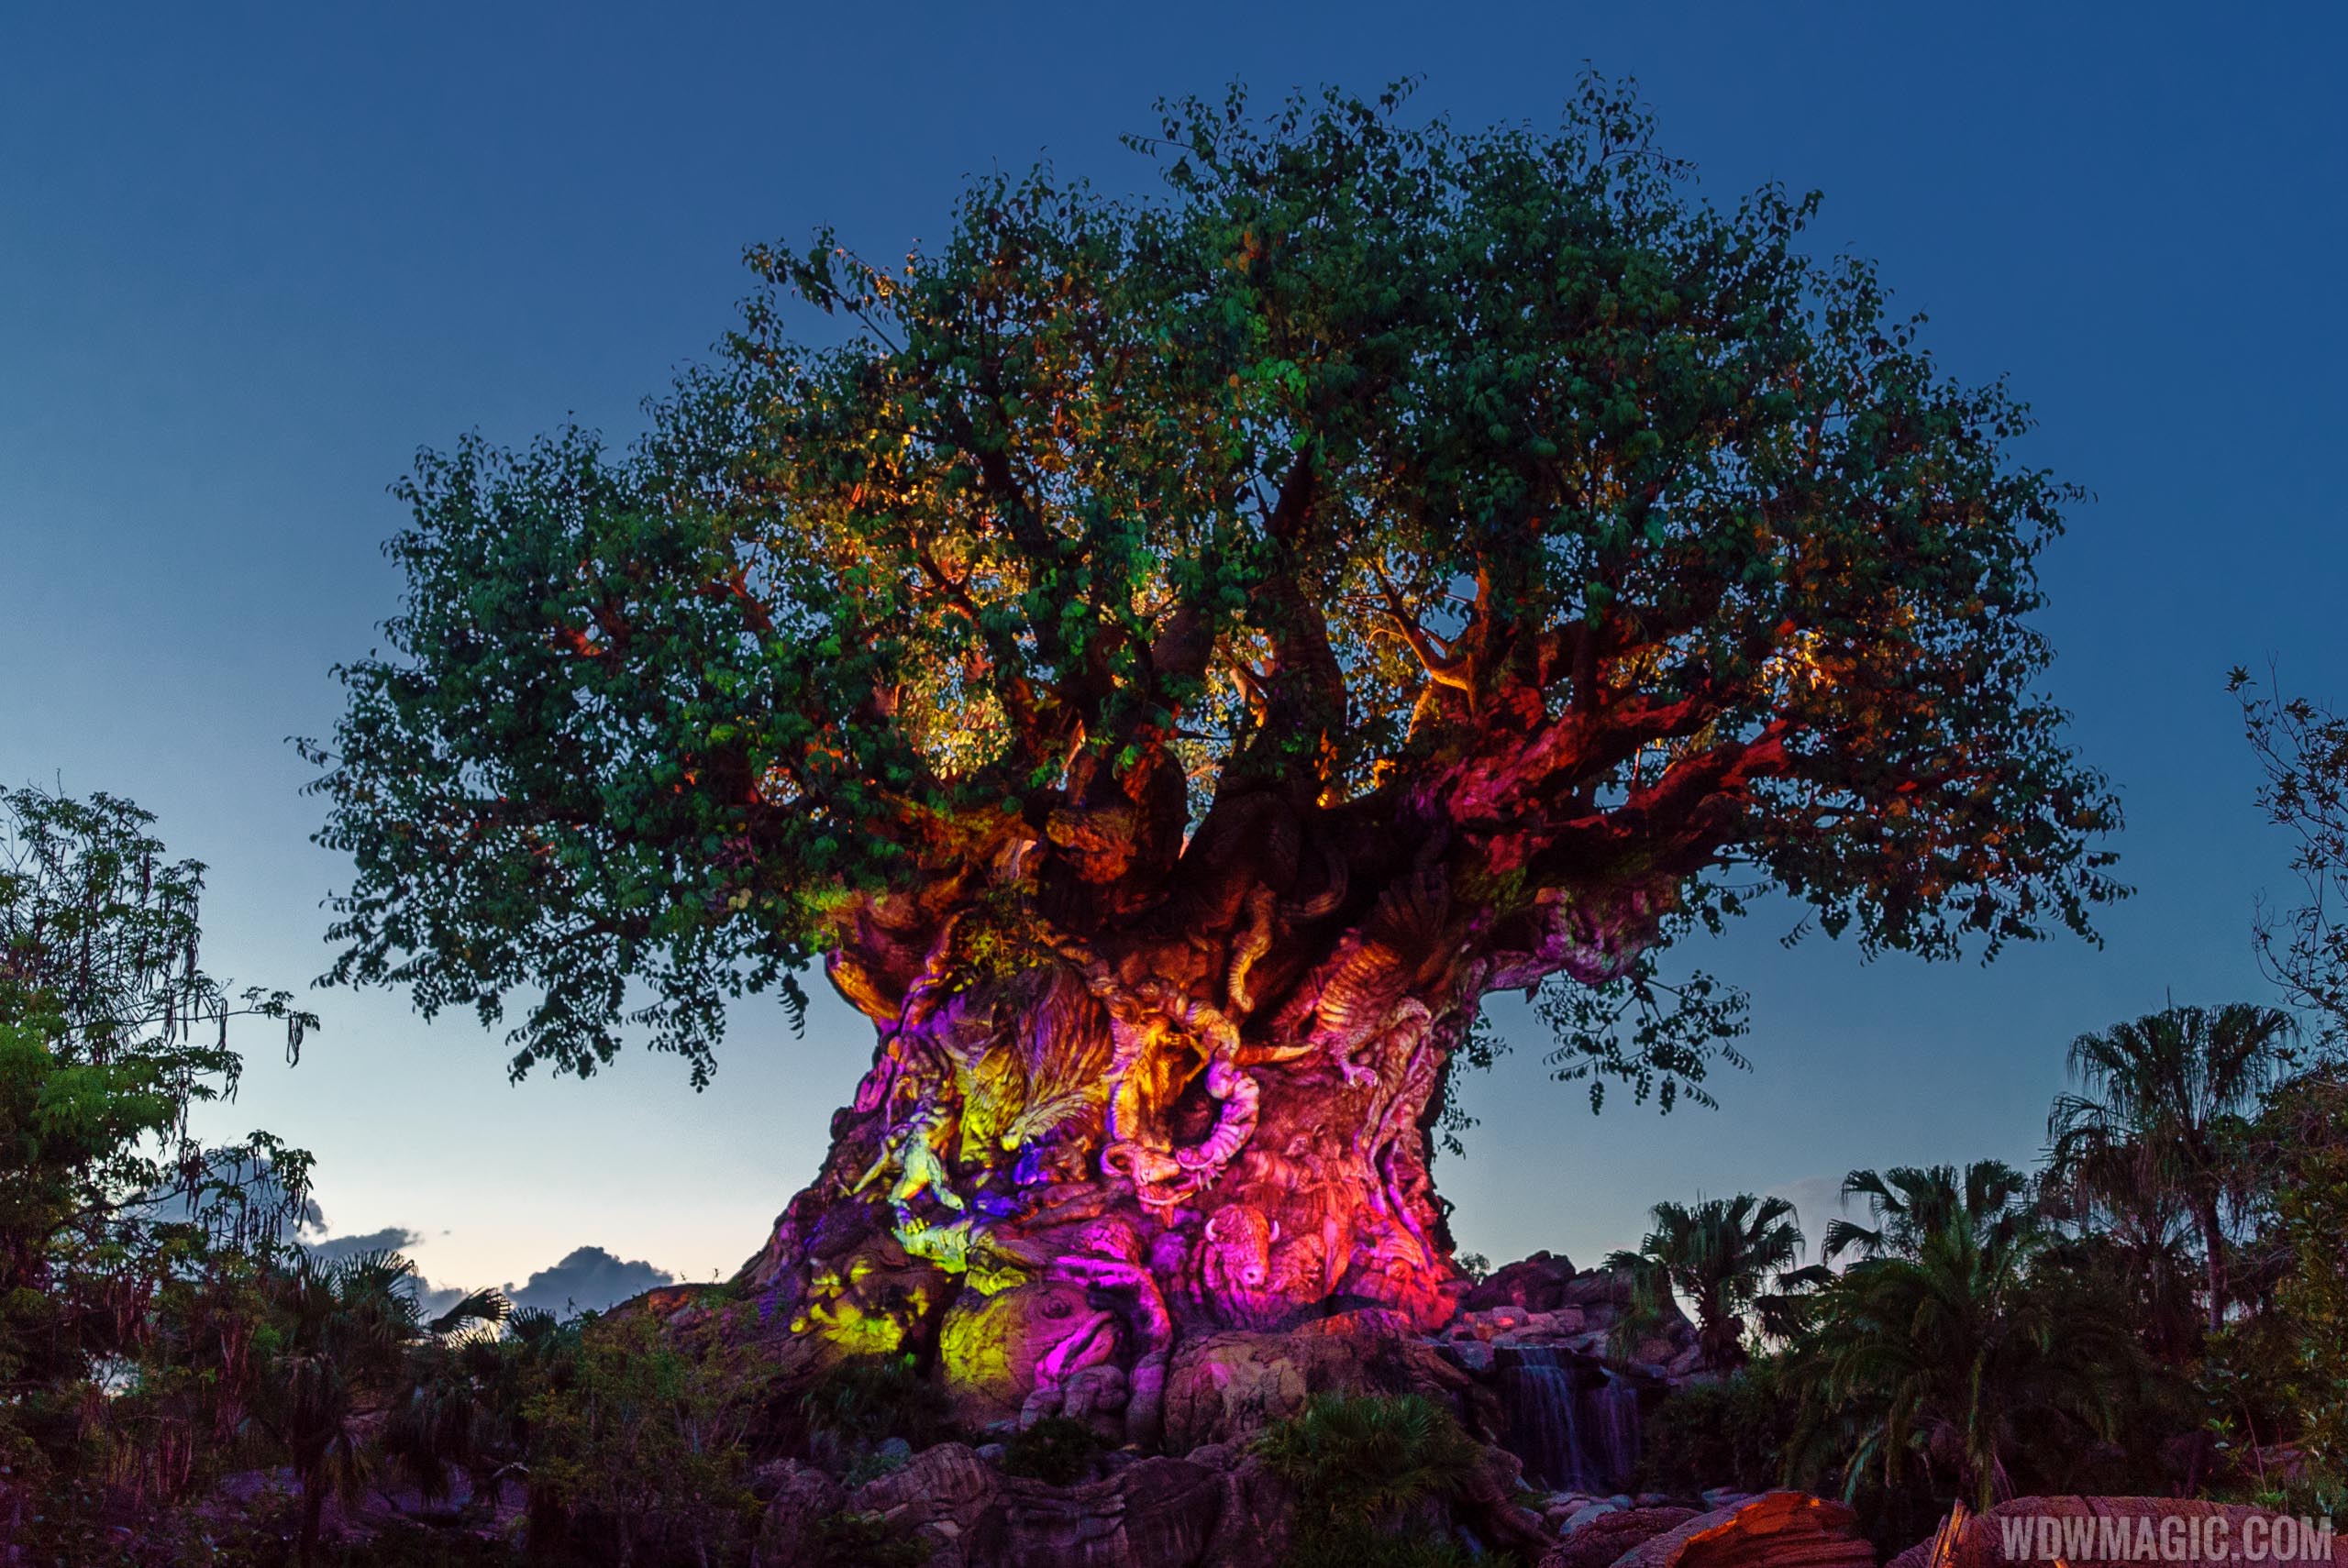 Tree of Life Awakenings to return to Disney's Animal Kingdom this fall